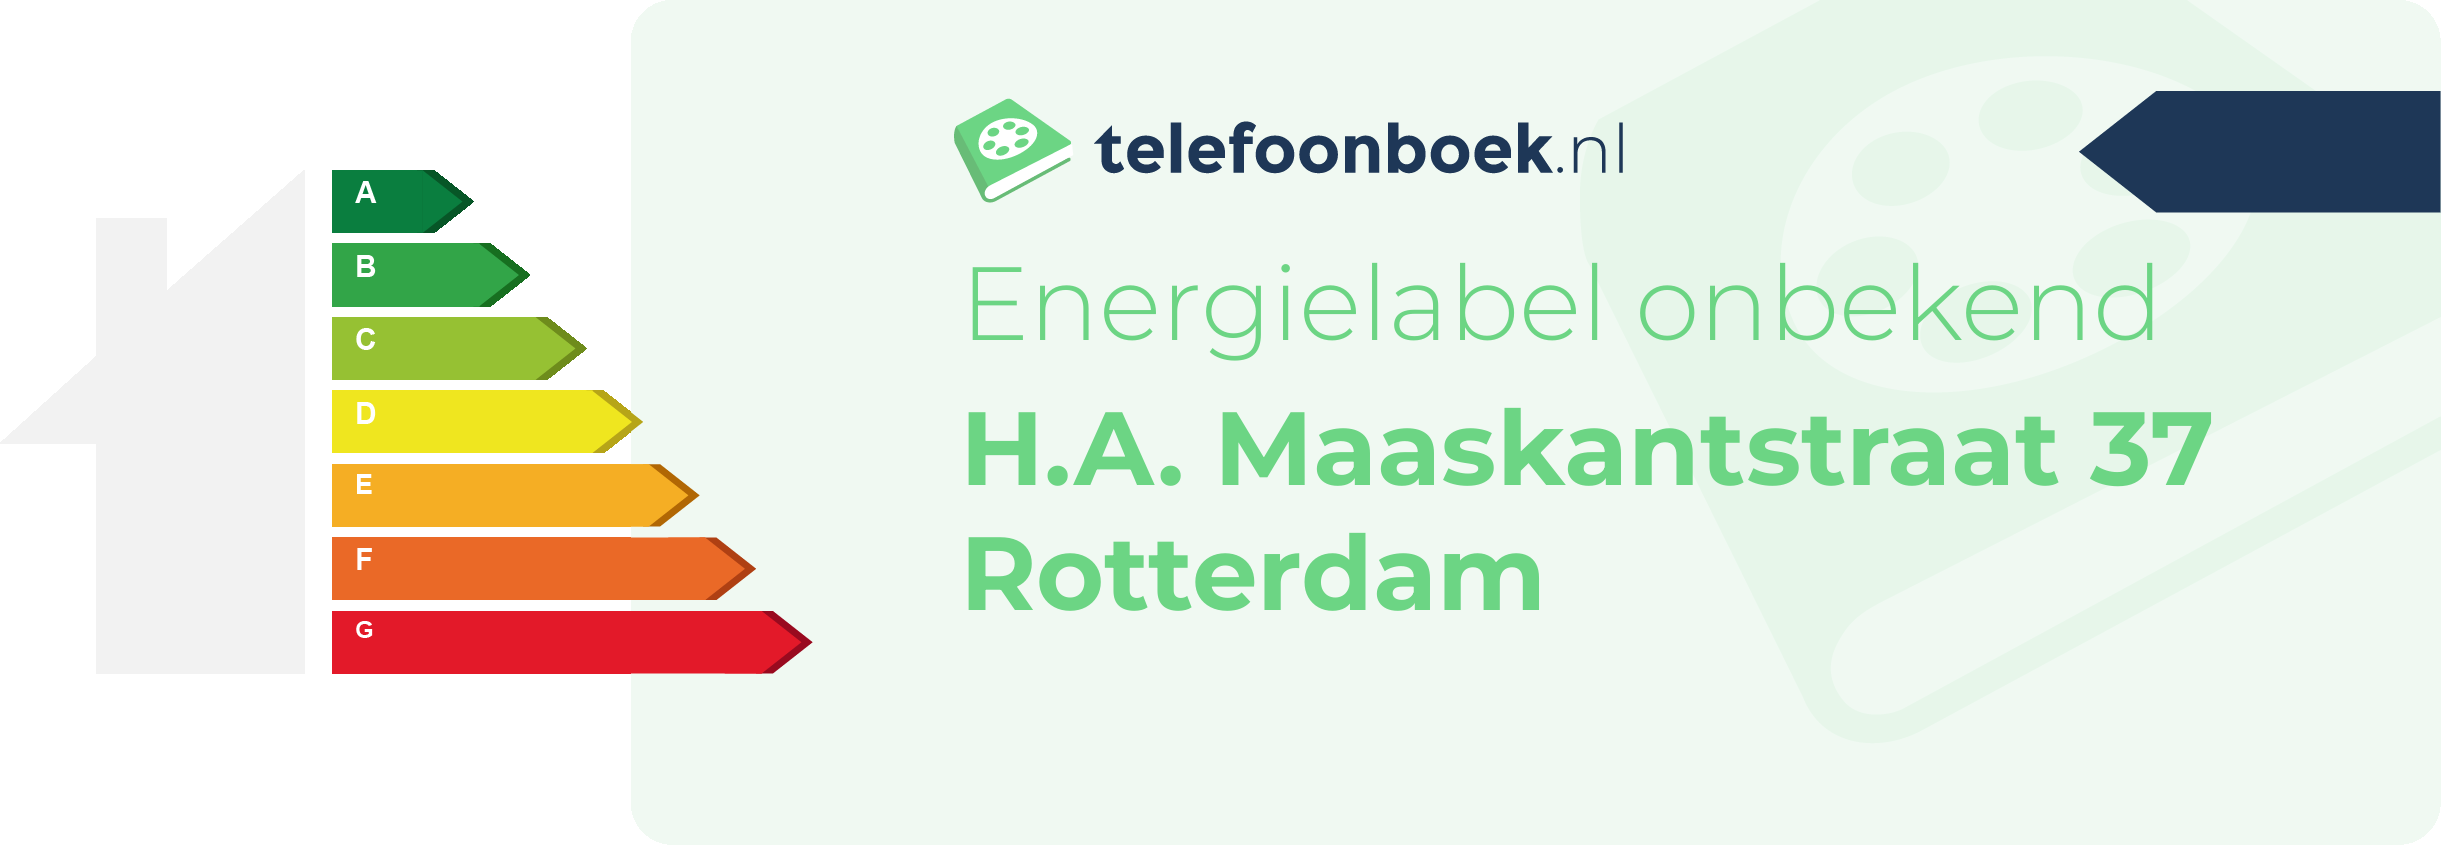 Energielabel H.A. Maaskantstraat 37 Rotterdam